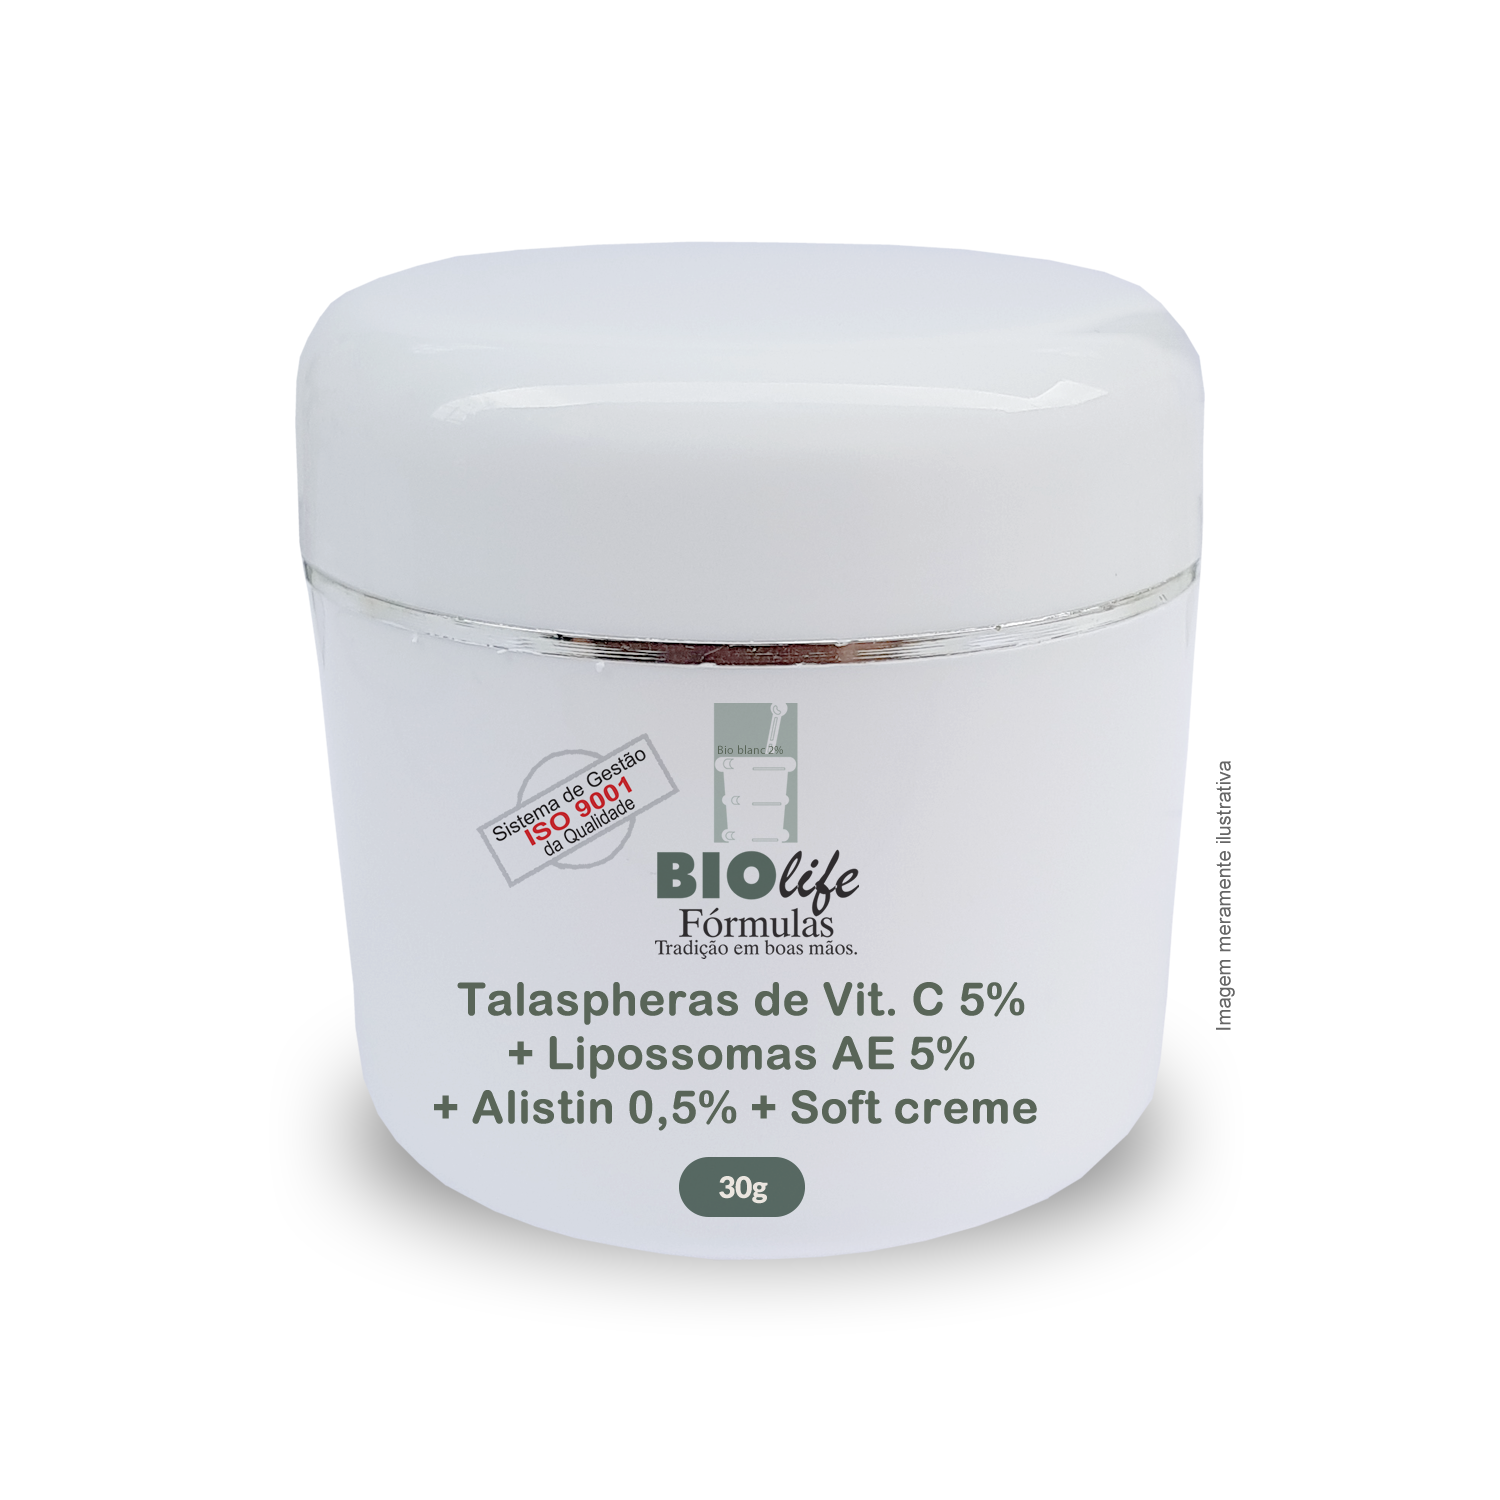 Talaspheras de Vit. C 5% + Lipossomas AE 5% + Alistin 0,5% + Soft creme qsp 30g - BioLife